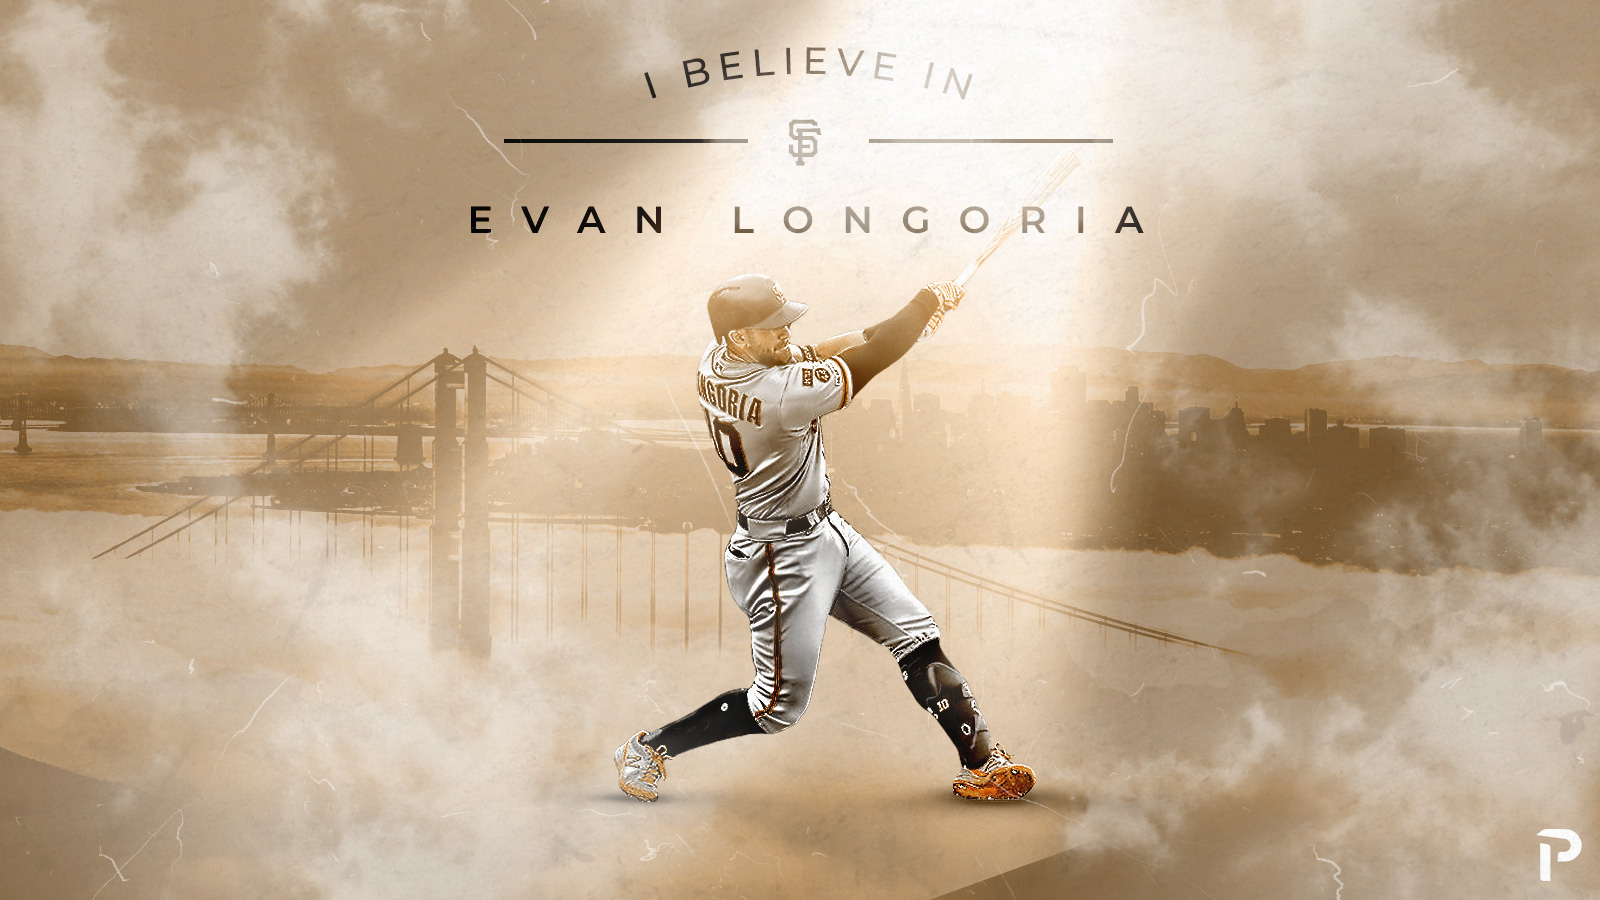 Giants news: Evan Longoria on San Francisco future